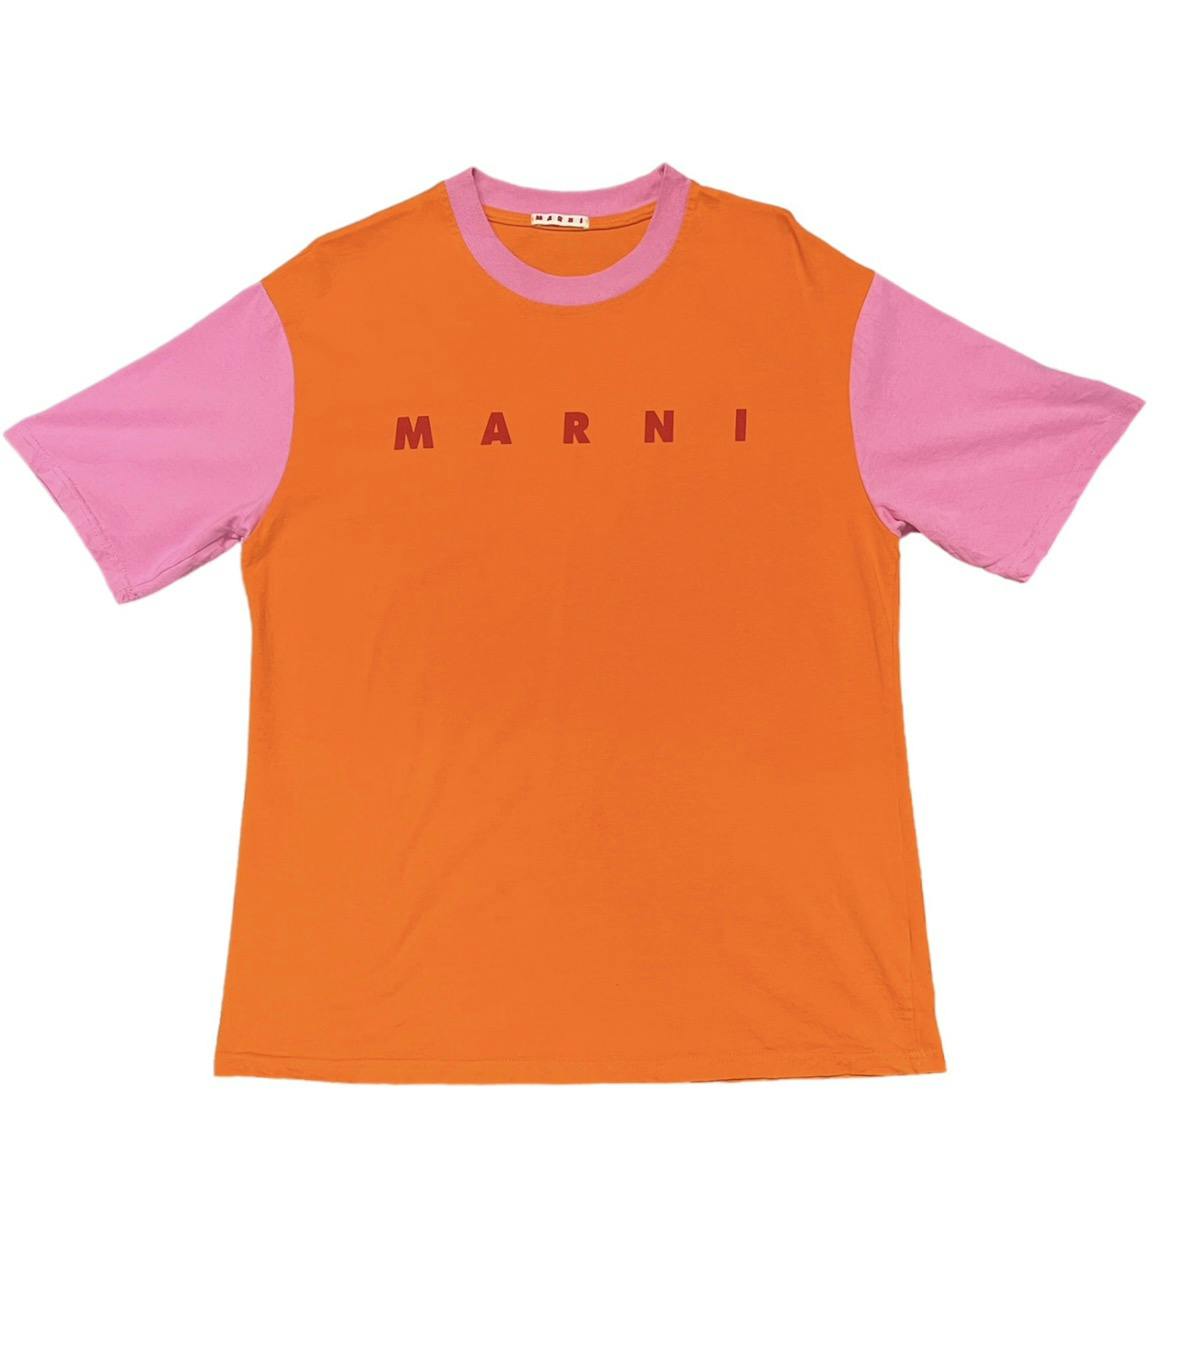 Marni Tshirt spellout - 1